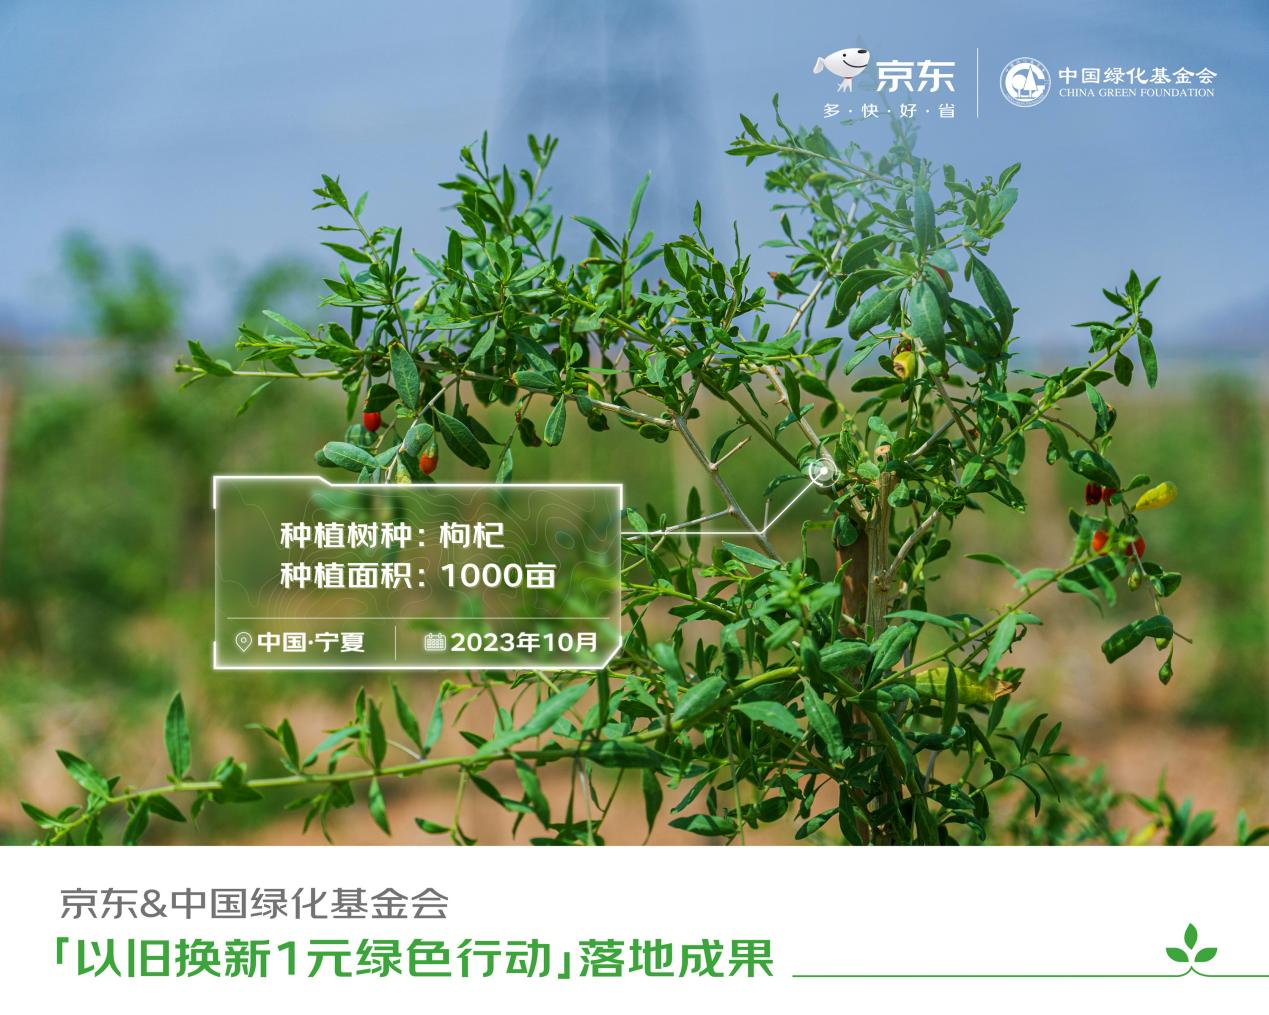 京东联合中国绿化基金会开展公益植树 推动11.11以旧换新绿色消费